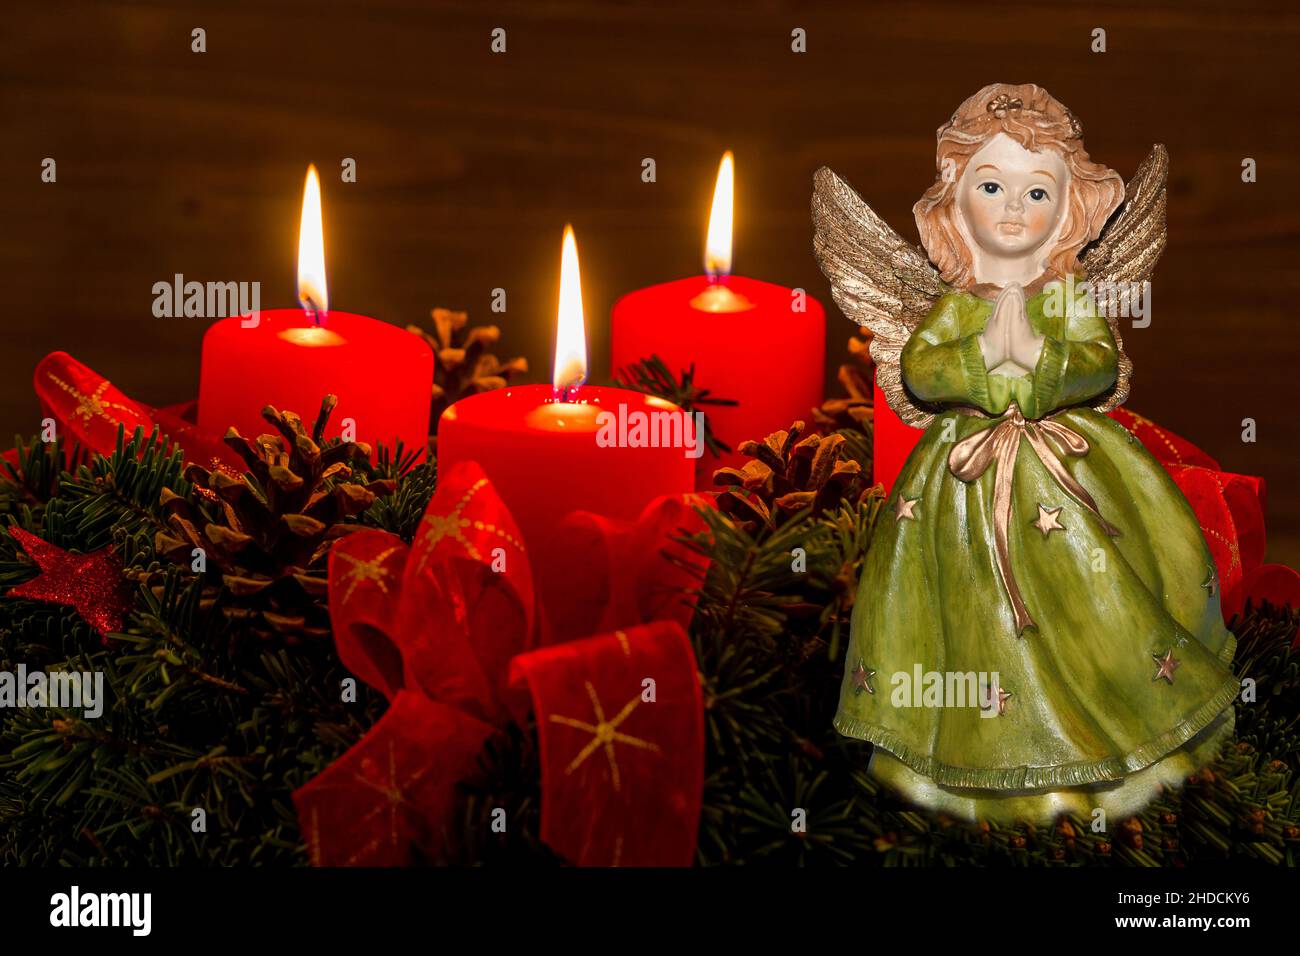 Ein Adventskranz zu Weihnachten sorgt für romatinsche Stimmung in der stillen Advent Zeit. 3 brennende Kerzen, 3. Advent, Engel, Weihnachtsengel, Stock Photo